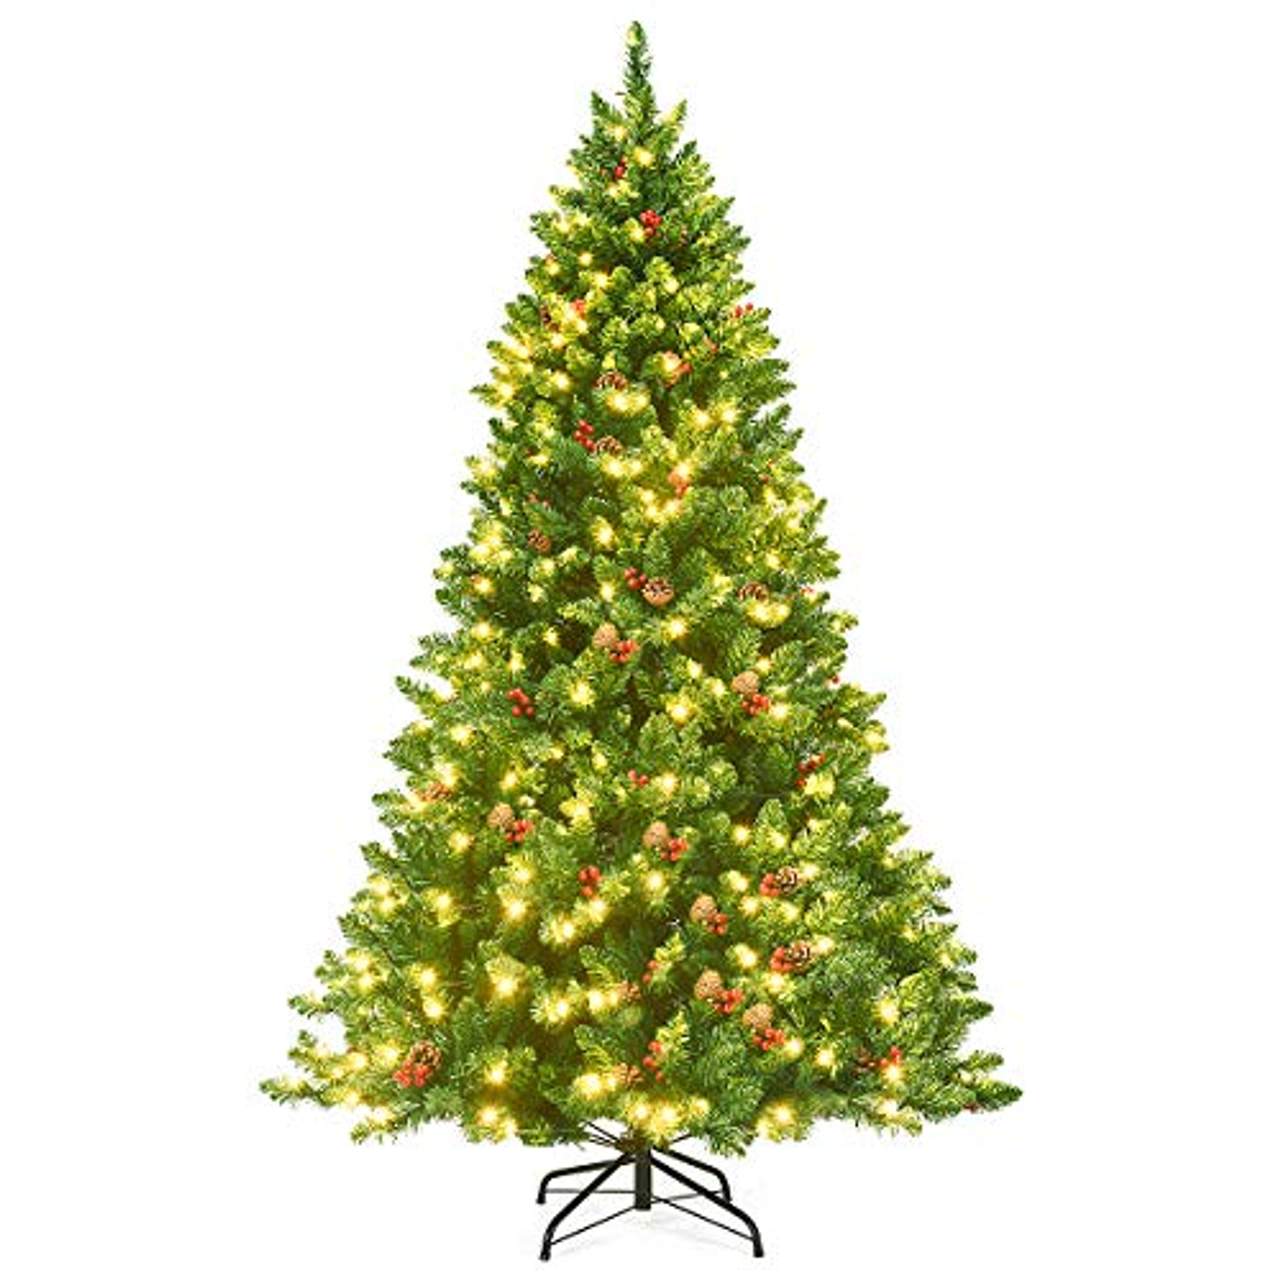 COSTWAY 200cm Künstlicher Weihnachtsbaum